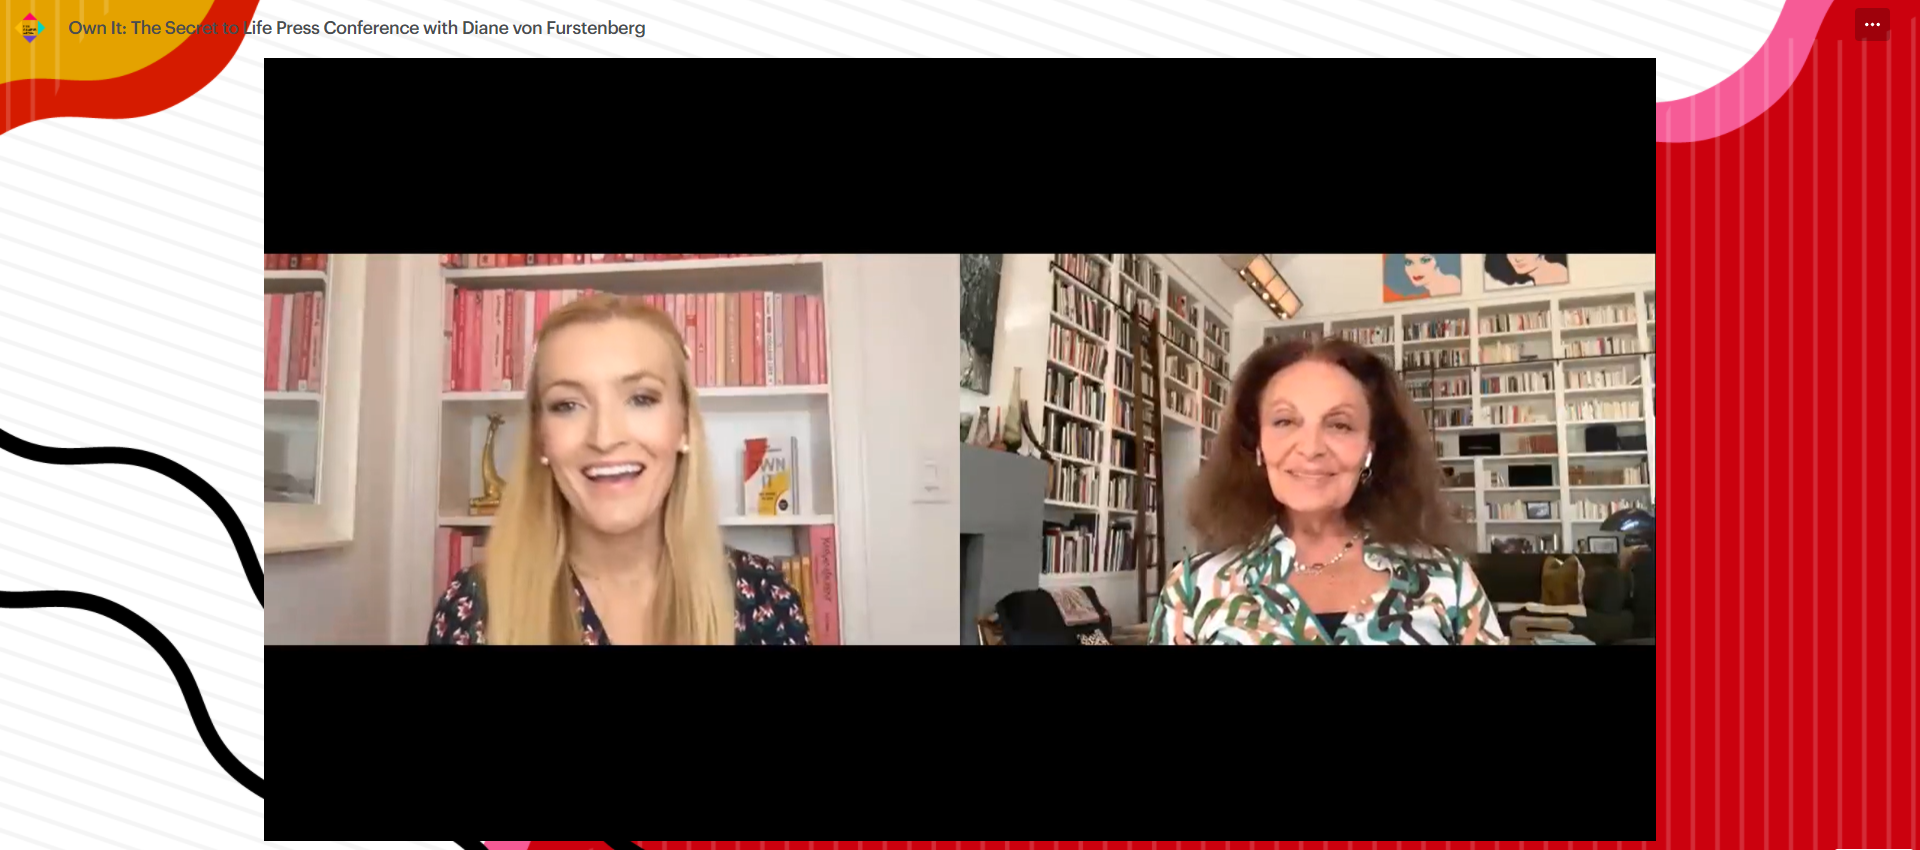 Diane von Furstenberg and Windsor Hanger Western in conversation in a webinar